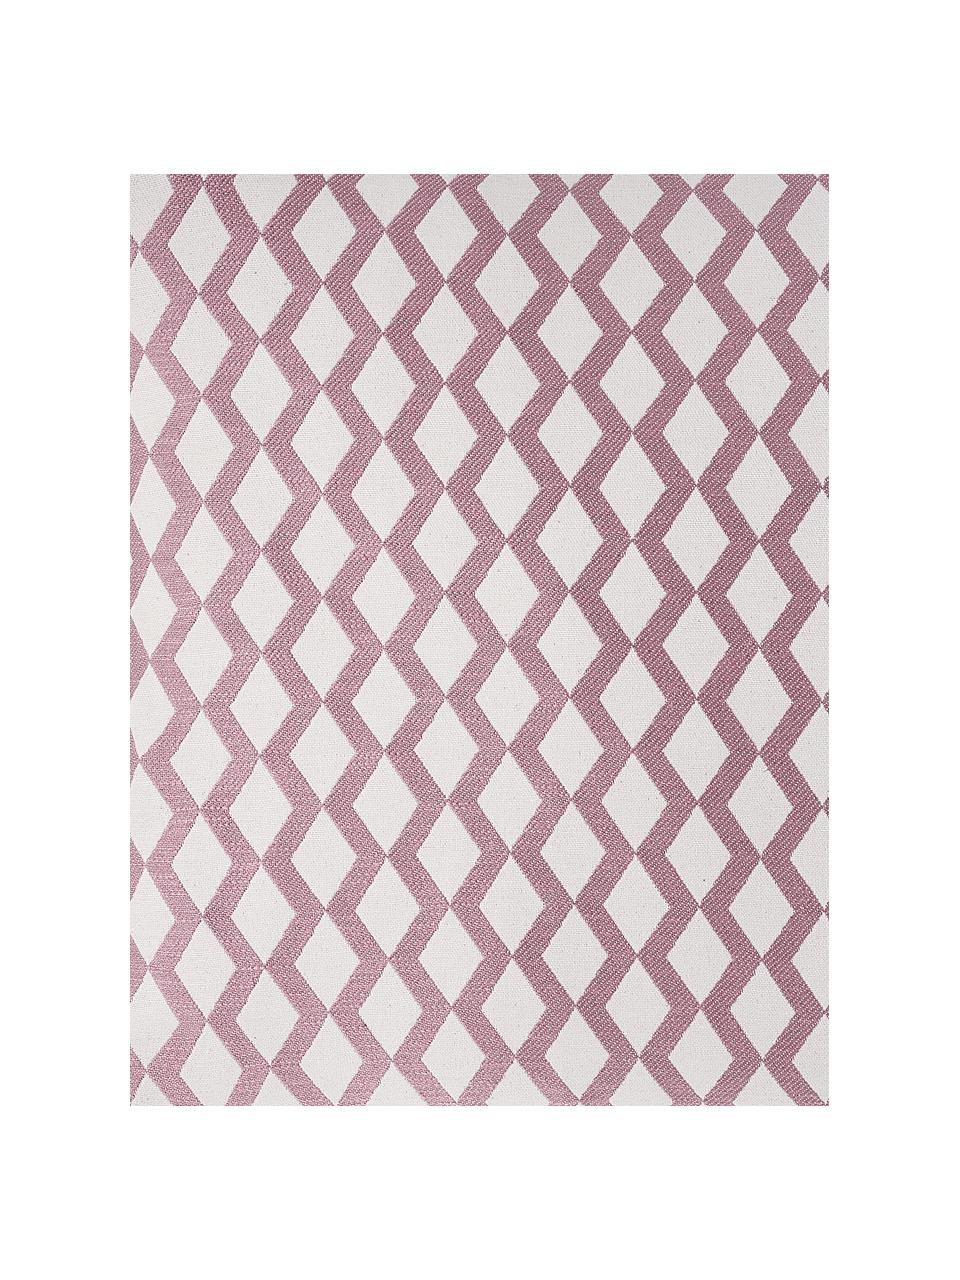 Kussenhoes Matteo met patroon, 51% viscose, 25% polyester, 15% linnen, 9% katoen, Roze, gebroken wit, 40 x 40 cm